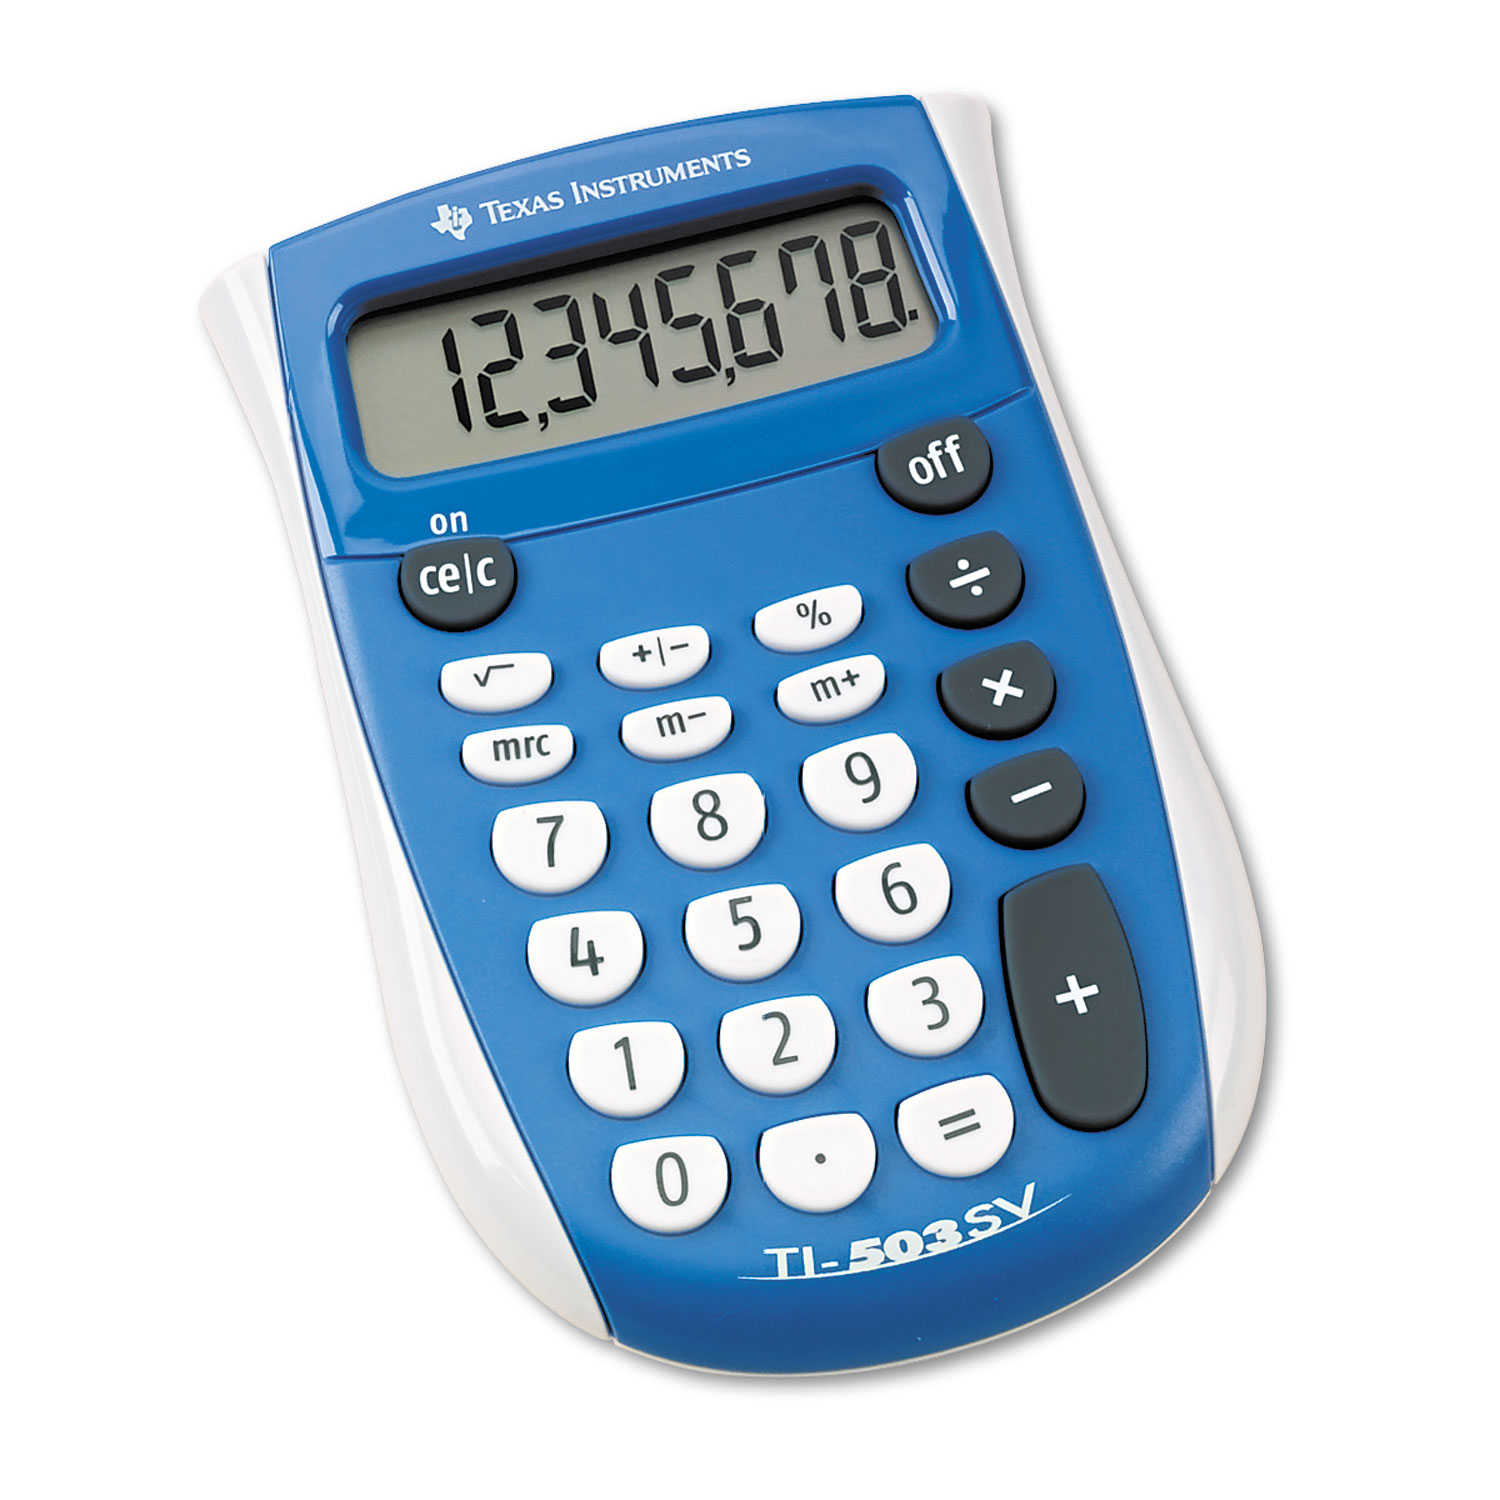  Texas Instruments 503SV/FBL/4L1/A TI-503SV Pocket Calculator, 8-Digit LCD (TEXTI503SV) 